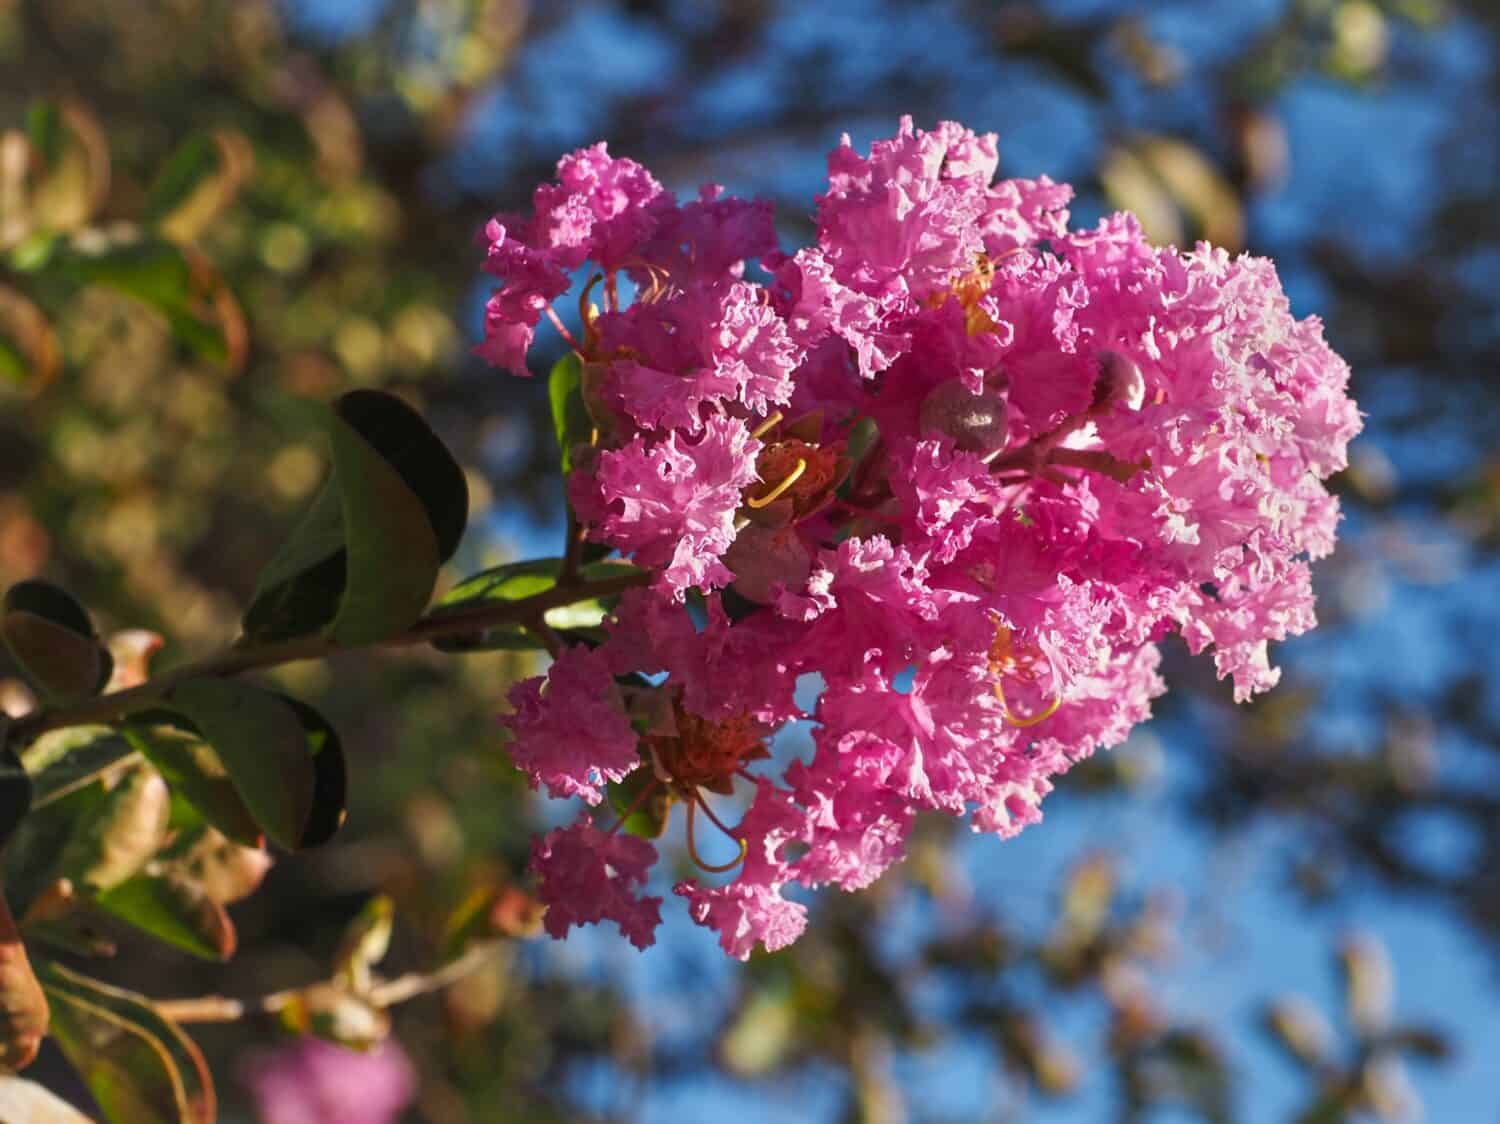 Fiore crespo o mirto crespo, fiore rosa, primo piano.  Lagerstroemia indica è un albero a foglie decidue, popolare pianta da fiore della famiglia delle Lythraceae.